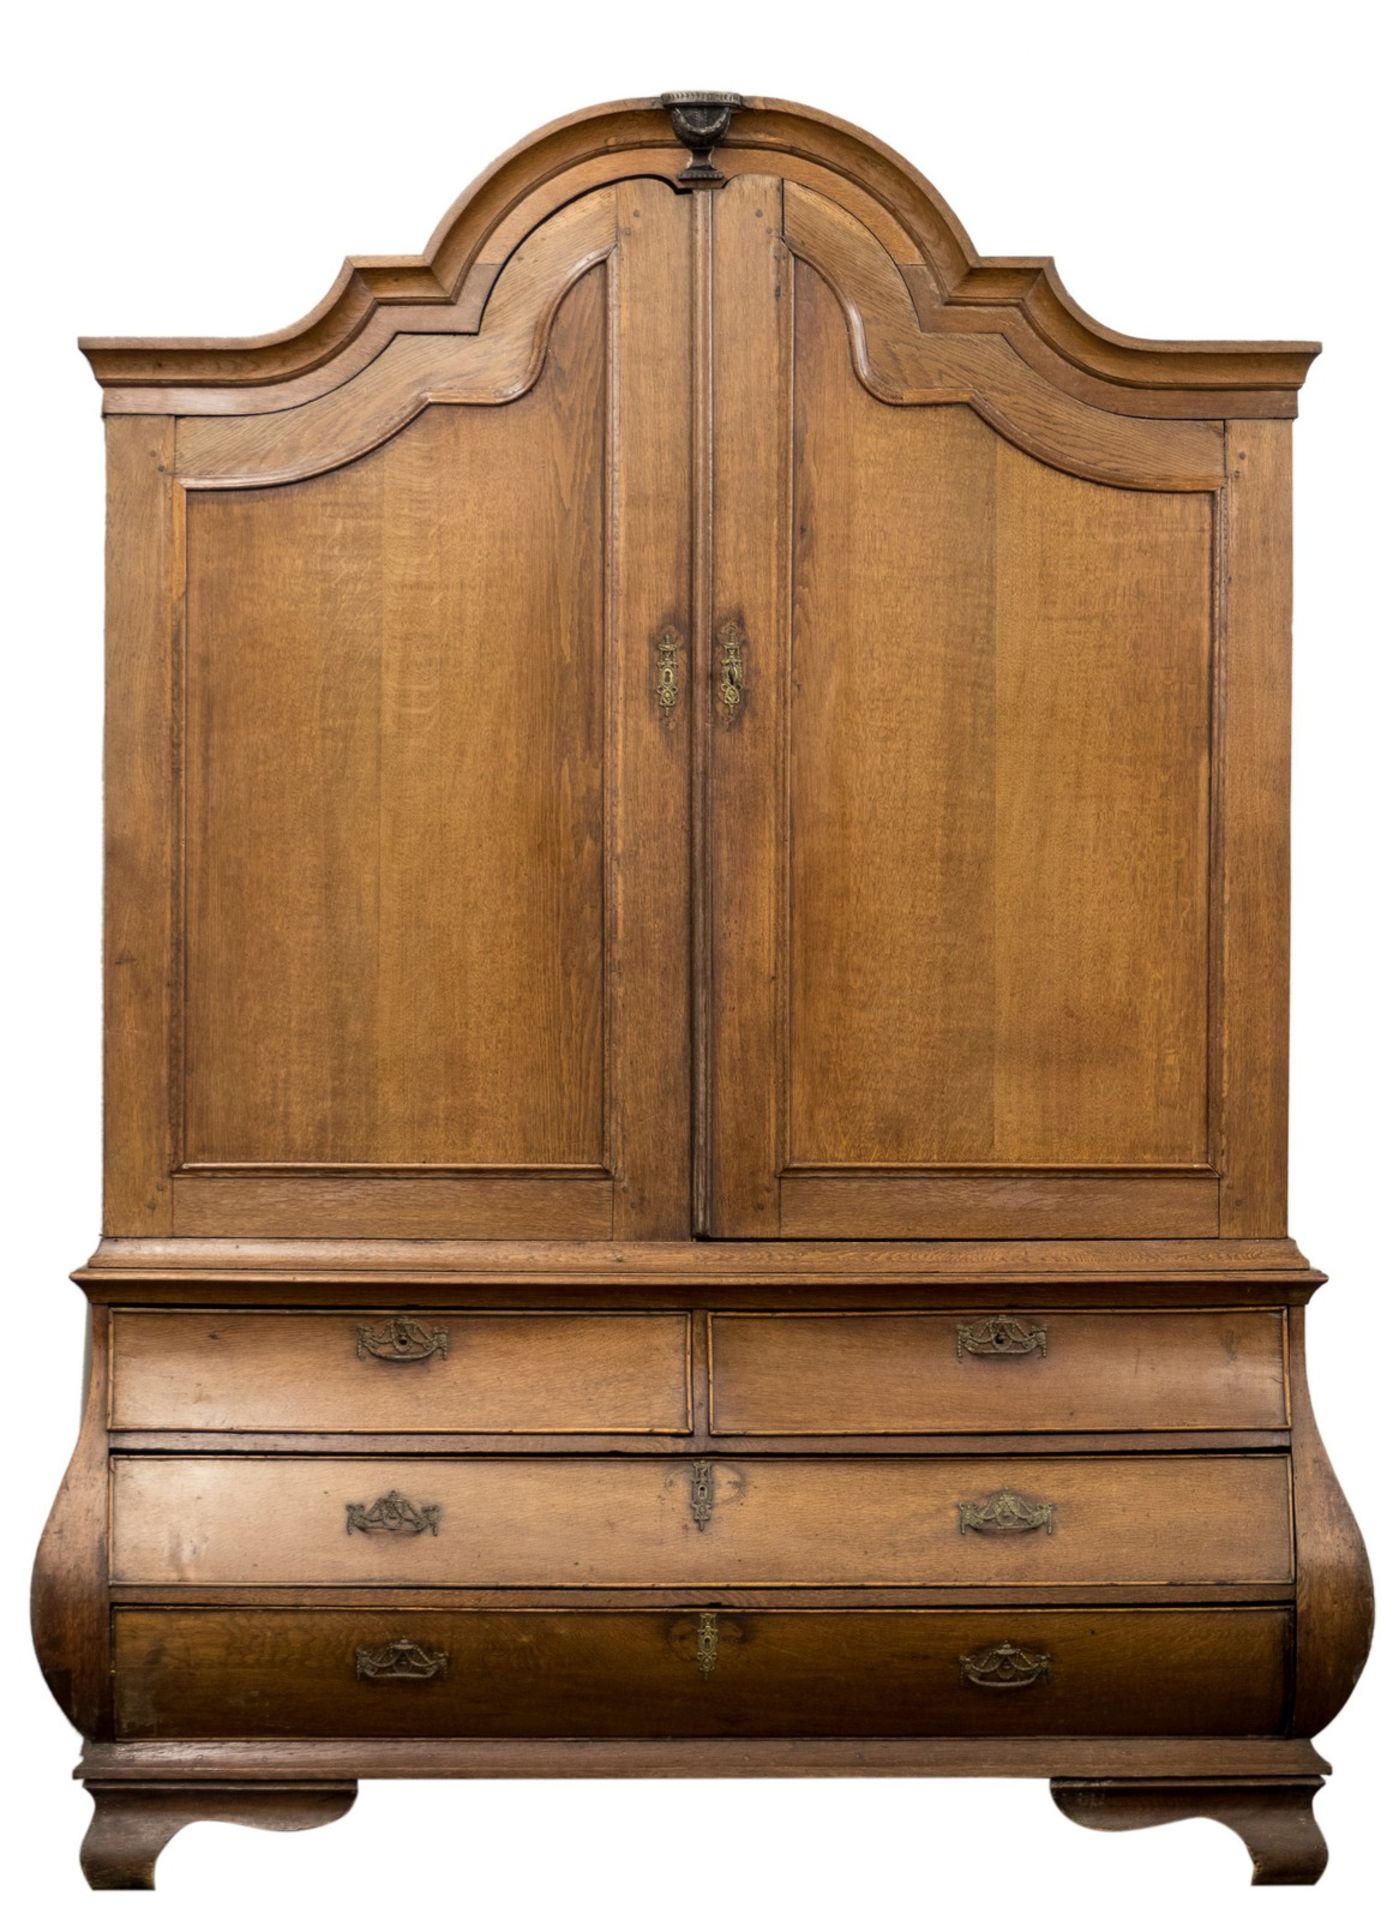 An 18thC Dutch oak cabinet, H 240 - W 179 - D 60,5 cm